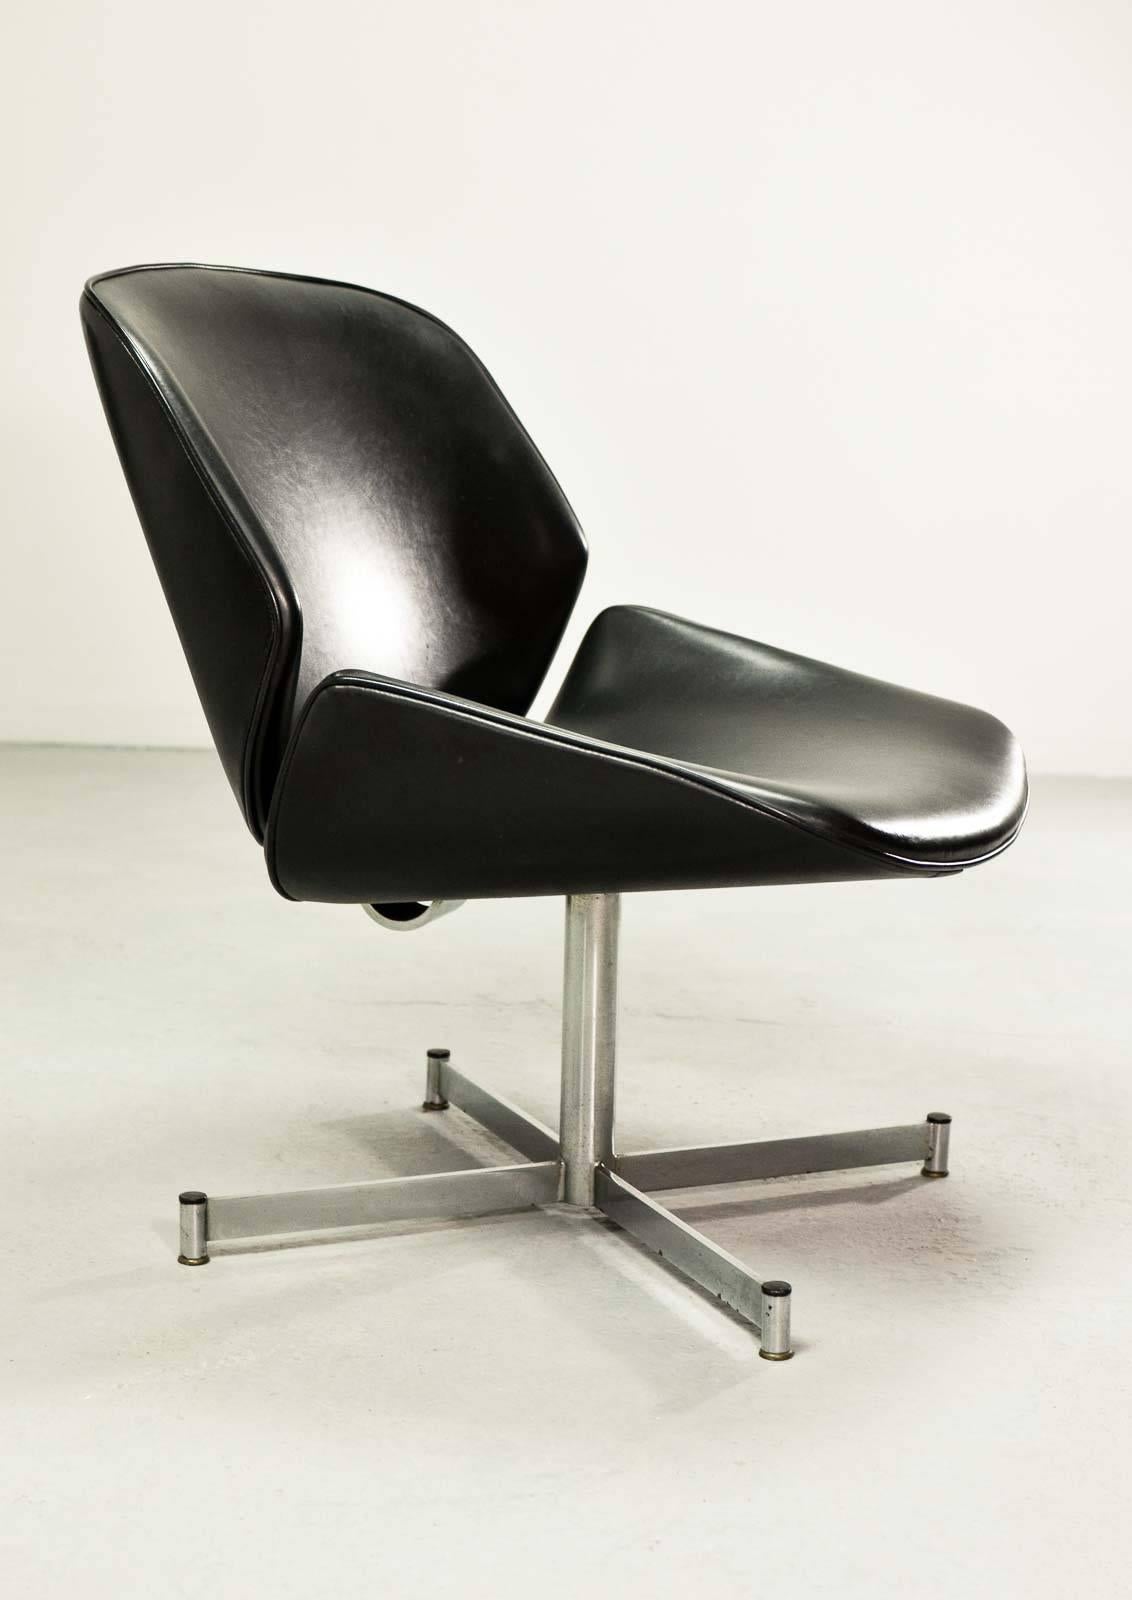 Steel Mid-Century Dutch Design Side Chairs by Geoffrey Harcourt for Exquis / Artifort